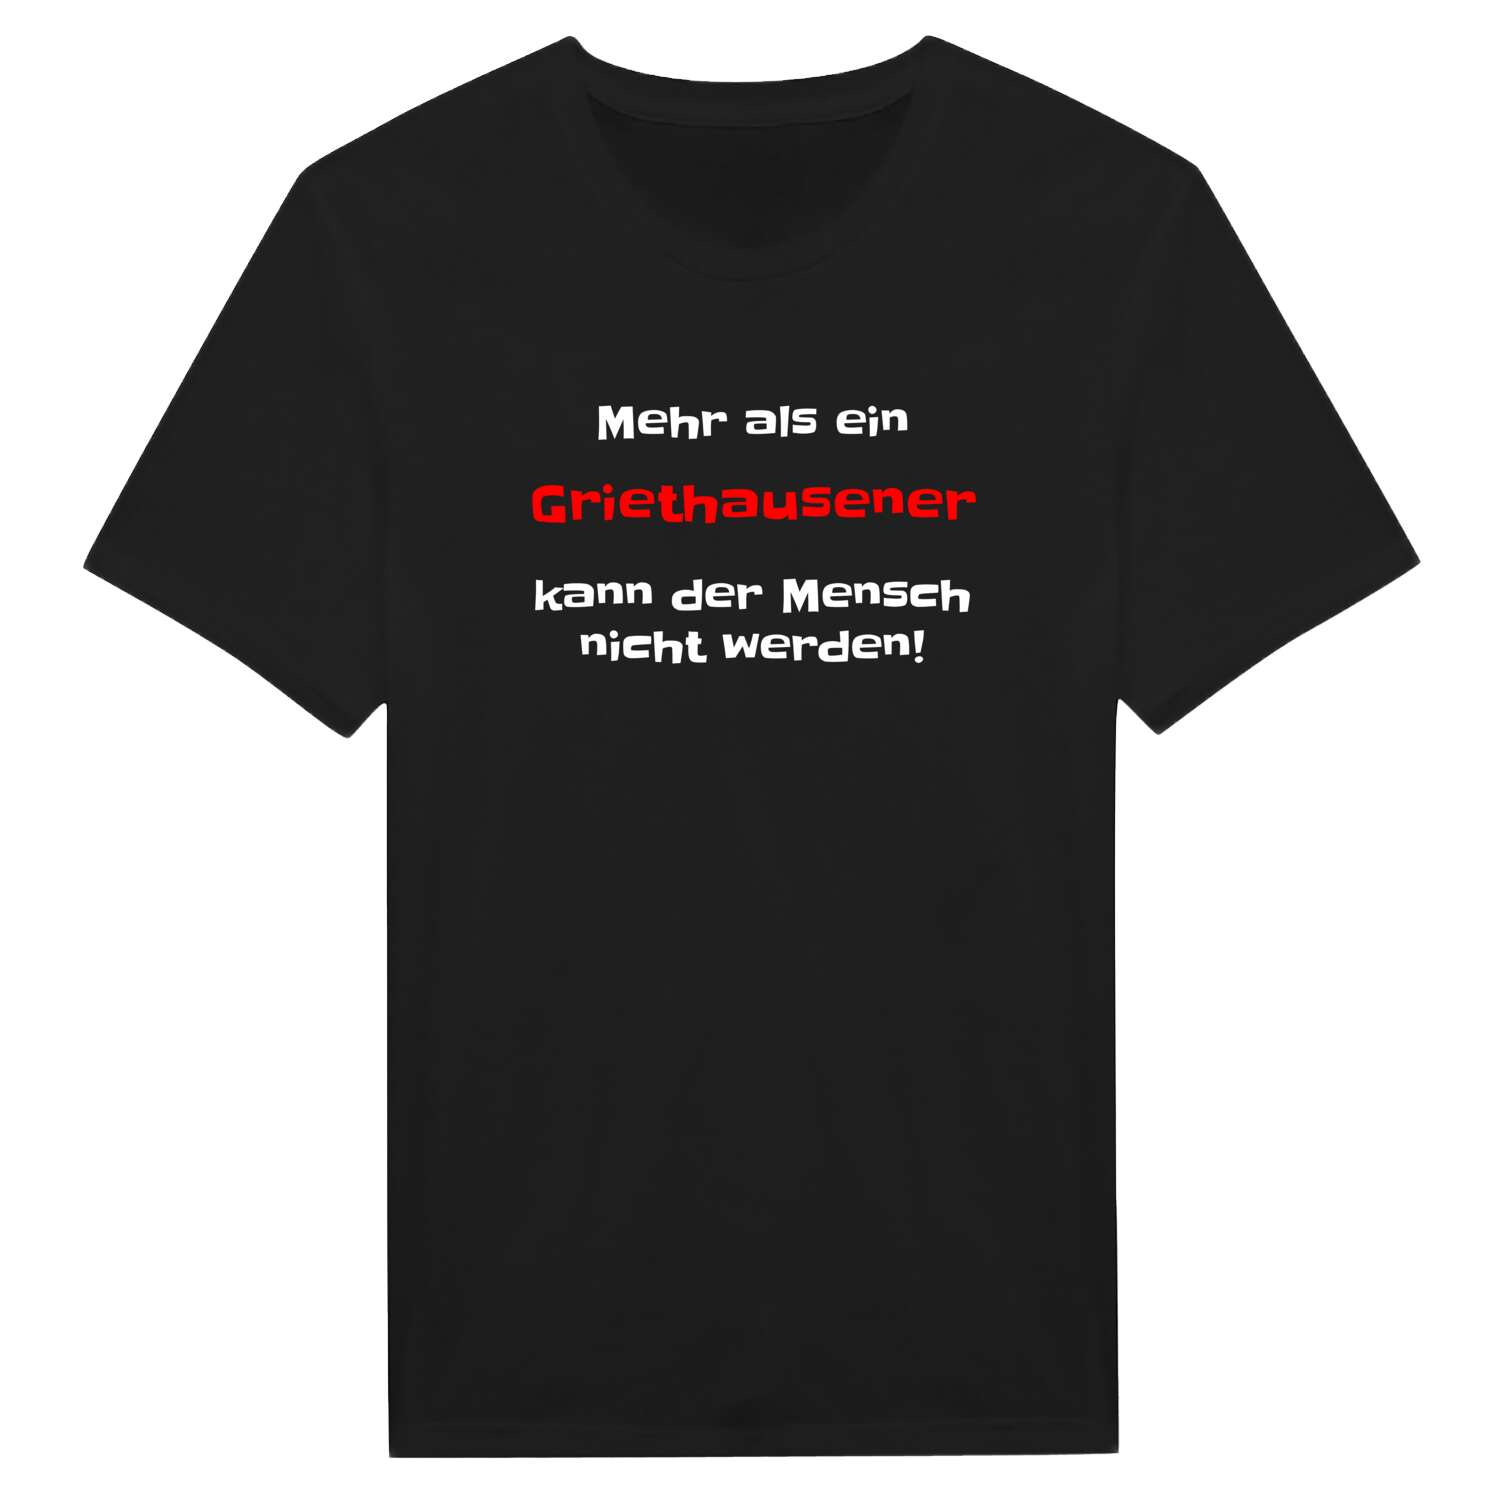 Griethausen T-Shirt »Mehr als ein«